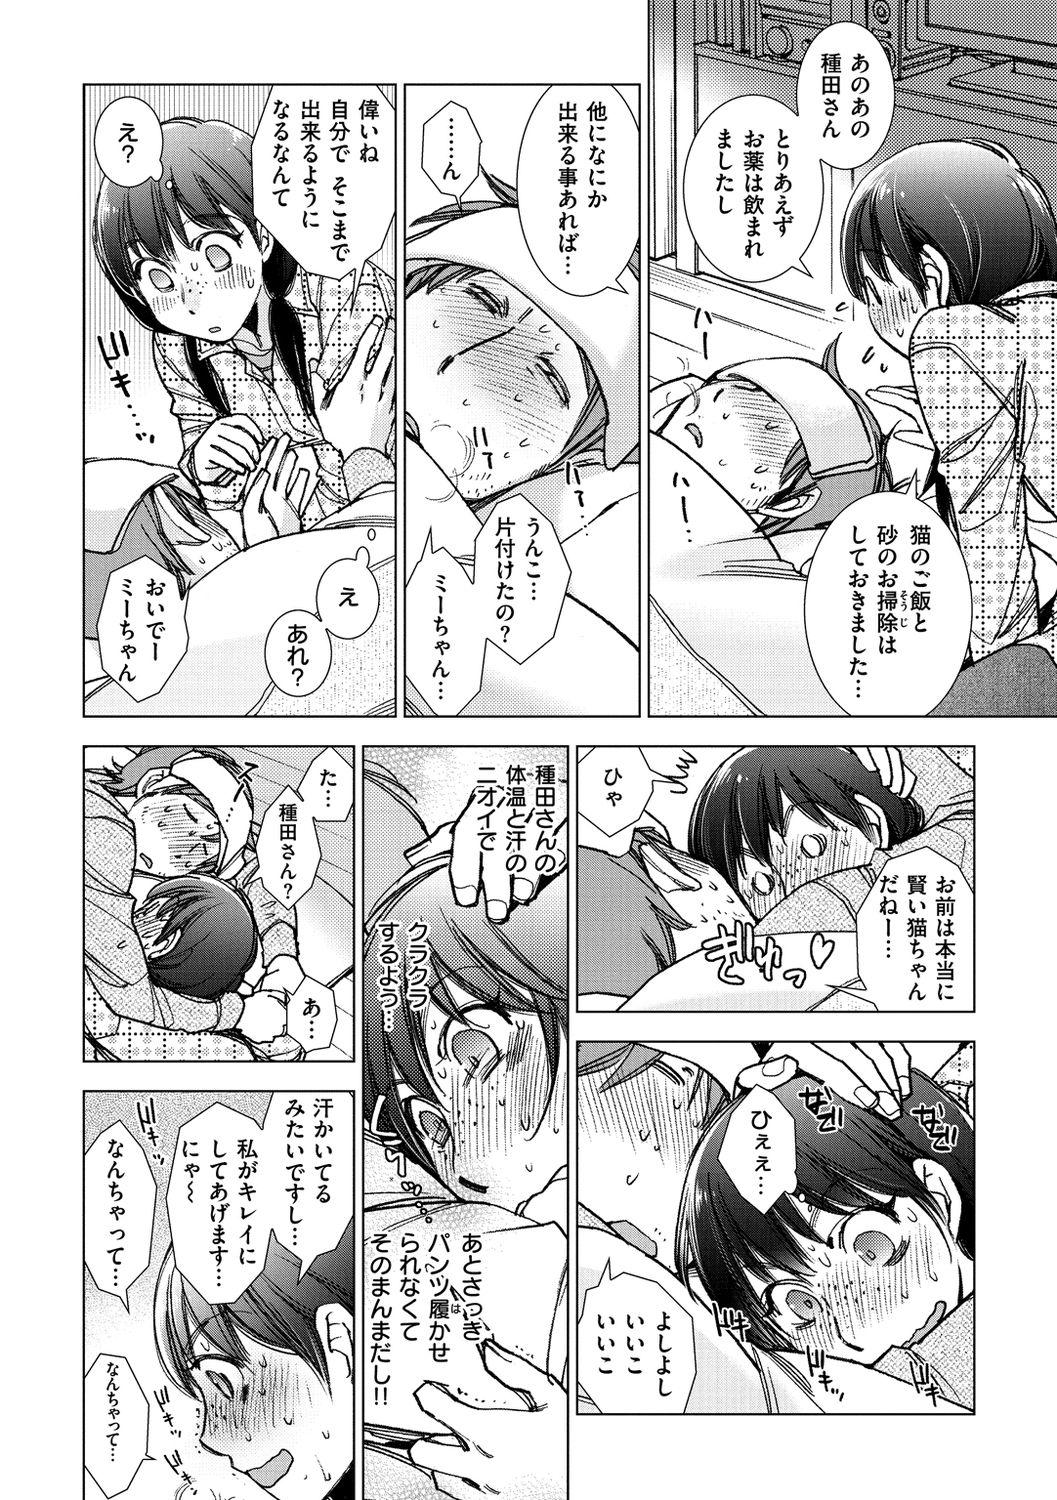 Mama Engei-ten no Yasashii Koibito Group - Page 10